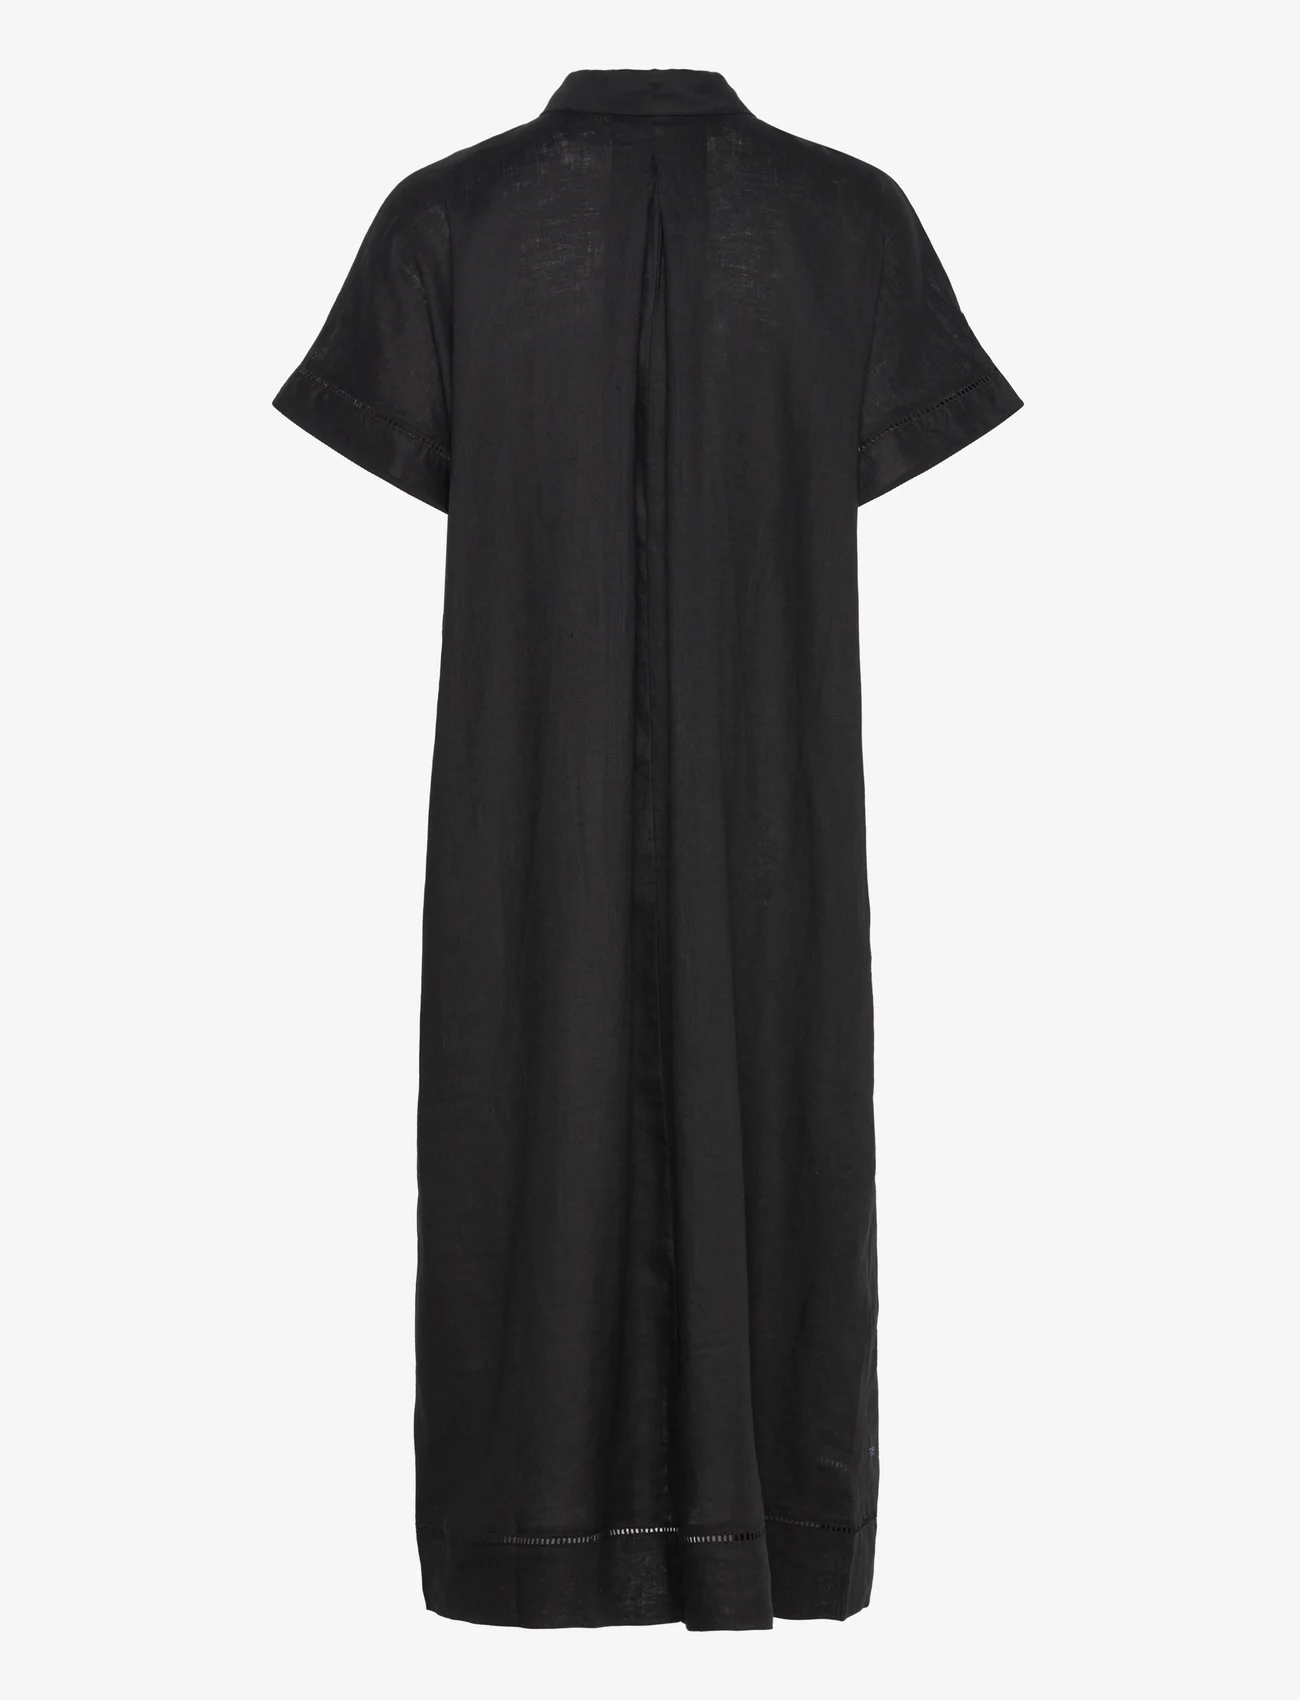 Lindex - Dress Laila pure linen - shirt dresses - black - 1